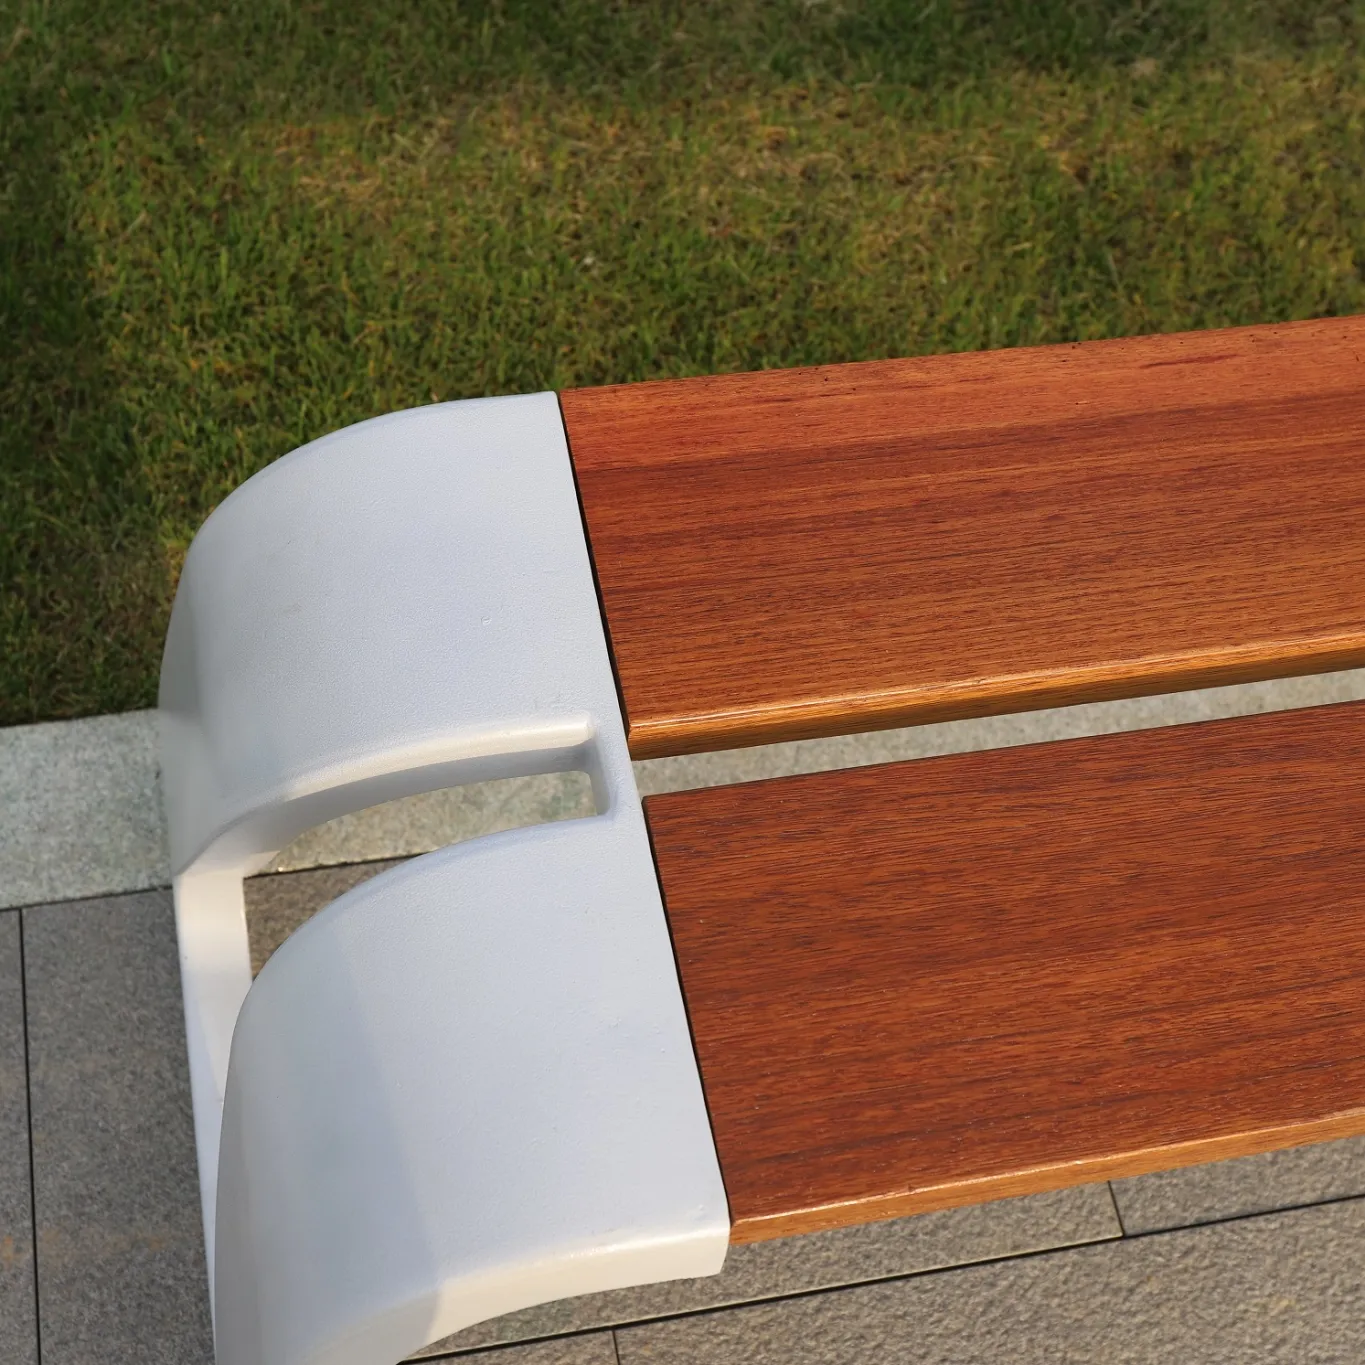 Panche da esterno in legno in acciaio inossidabile lungo e moderno sedile da panchina per parco all'aperto senza schienale